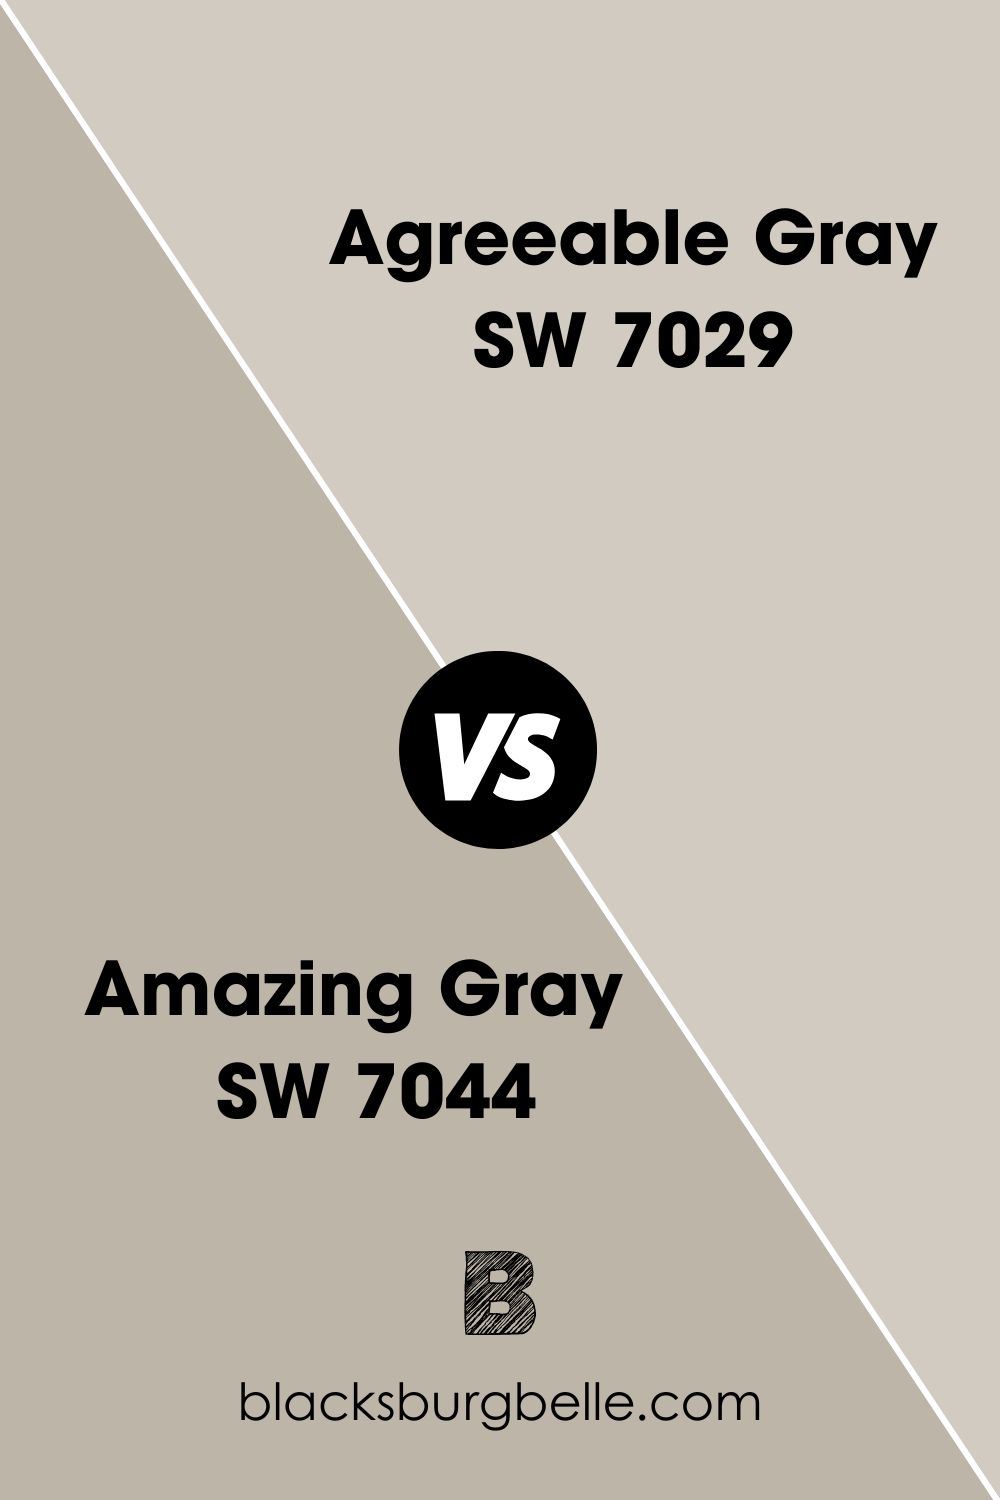 Amazing Gray SW 7044